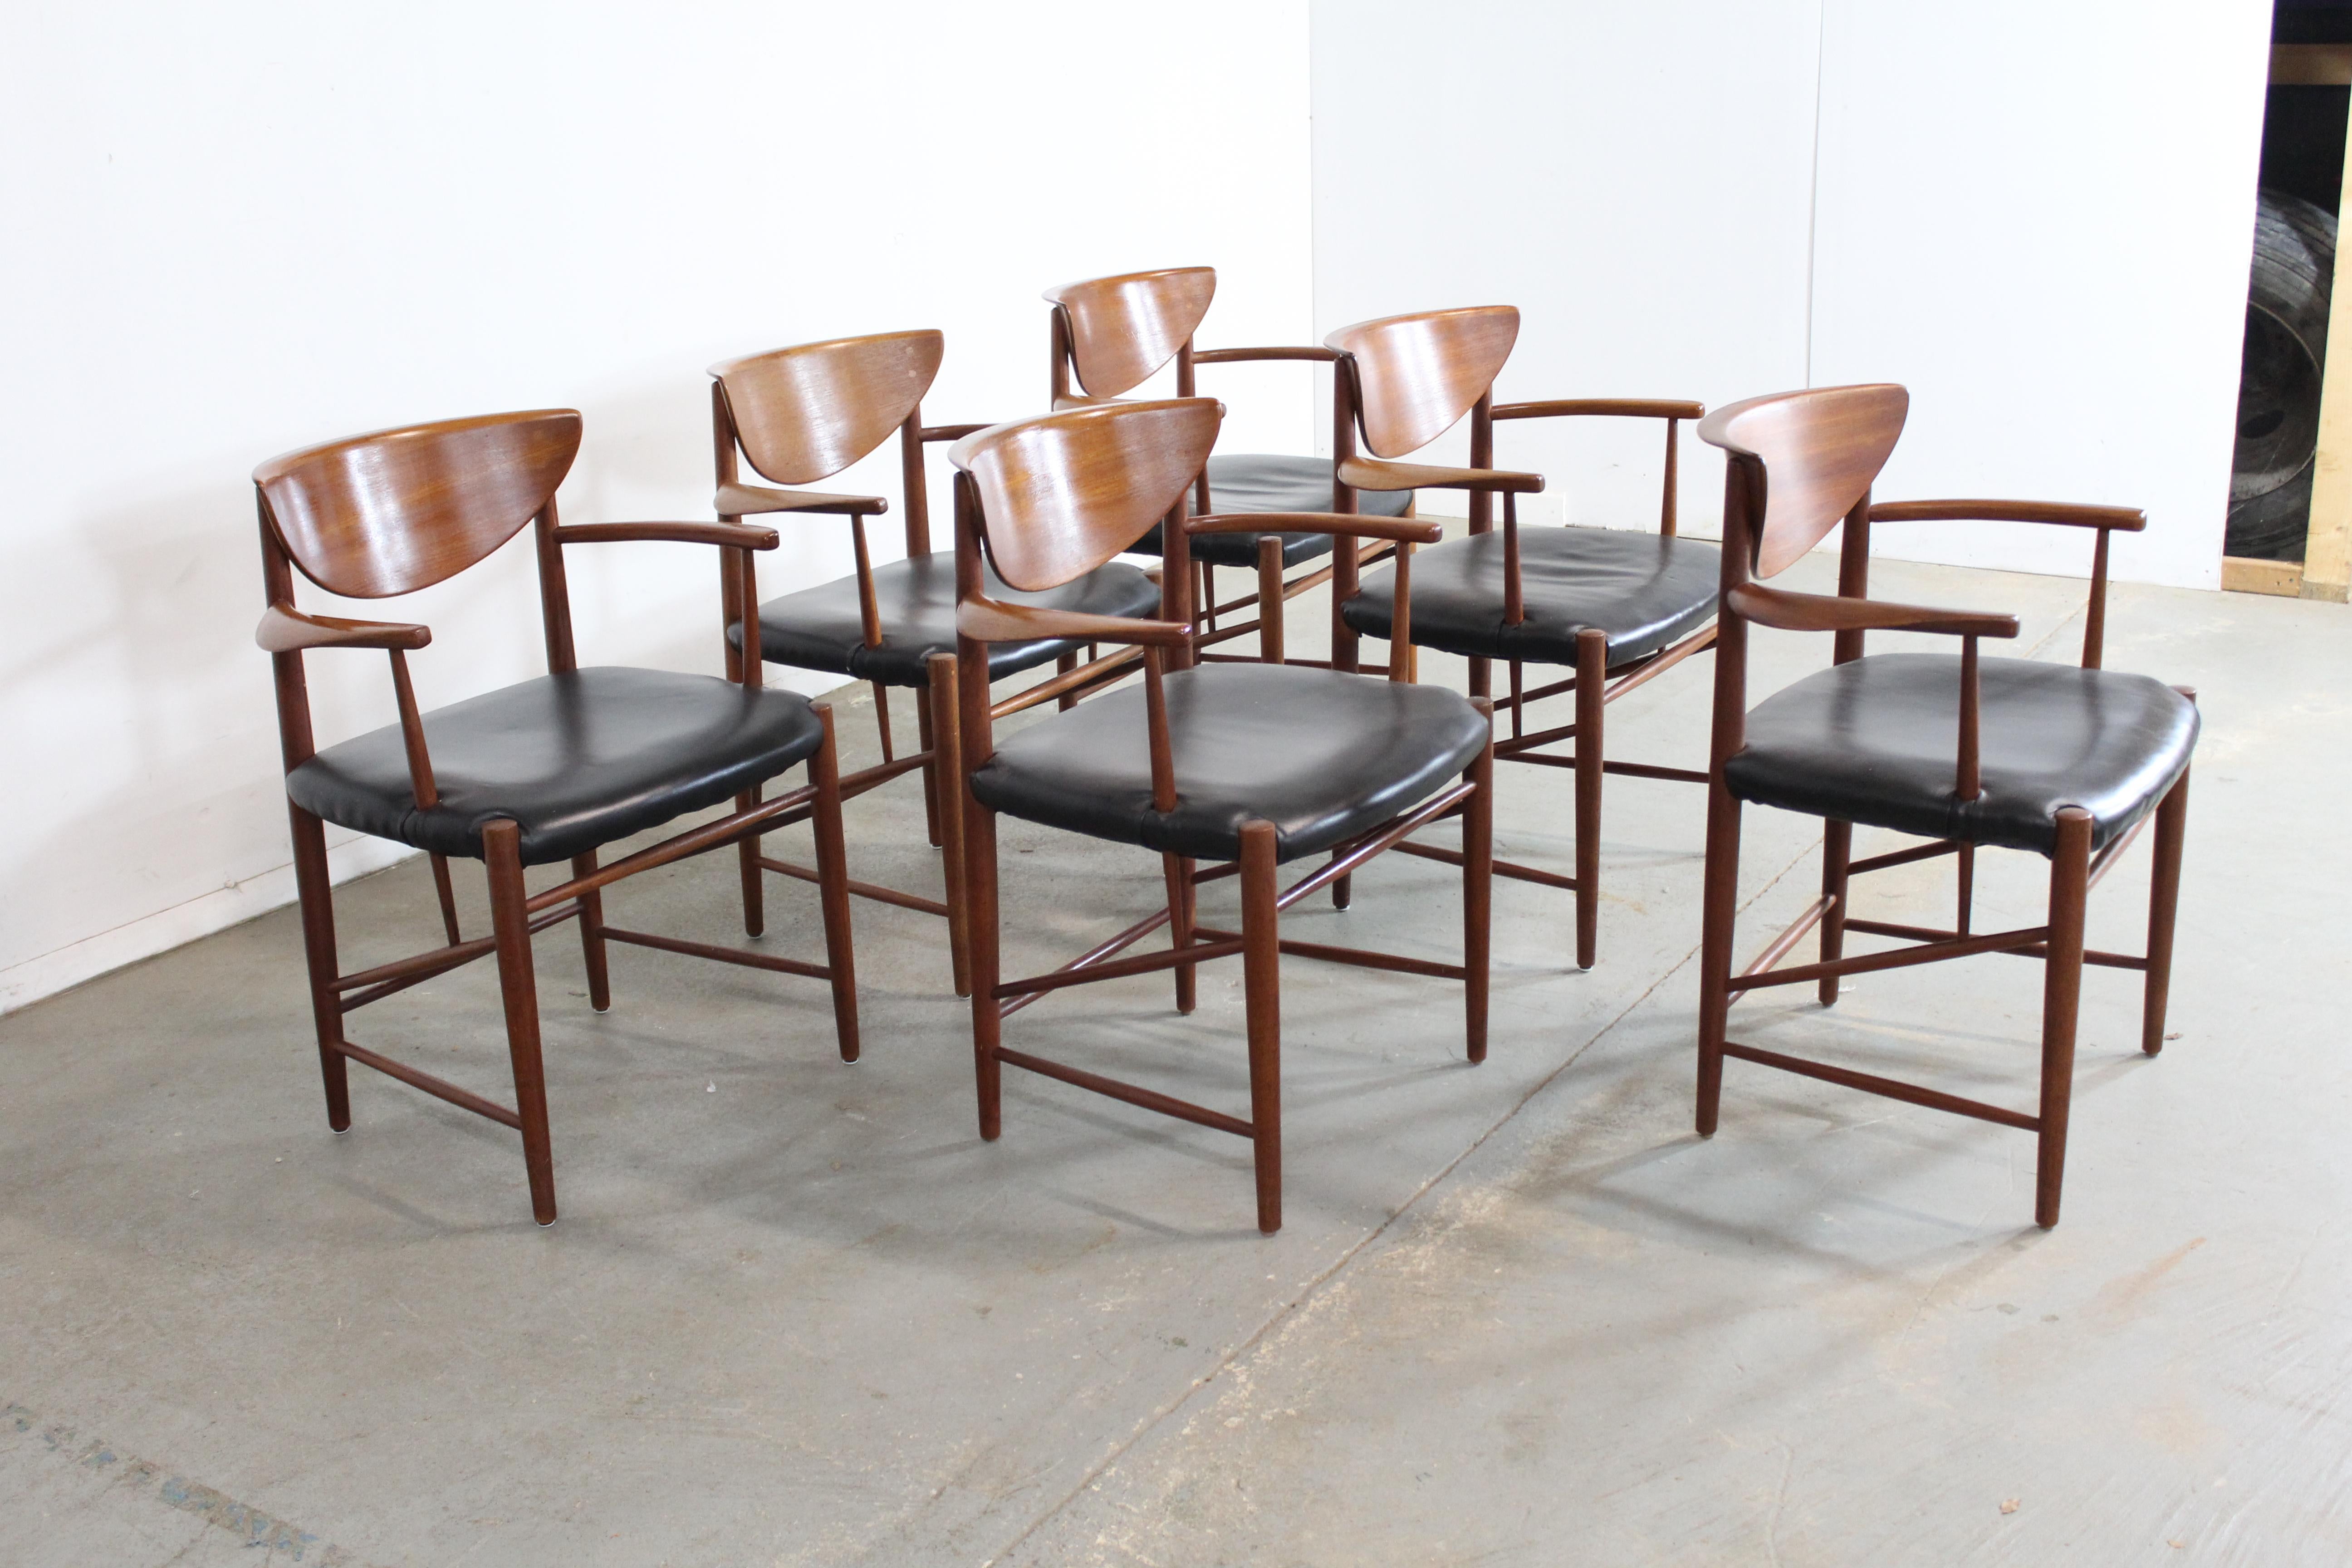 Ensemble de 6 chaises de salle à manger en teck Peter Hvidt, de style moderne du milieu du siècle.

Nous proposons un ensemble de 6 chaises de salle à manger en teck de style danois moderne, conçues vers 1953 par Peter Hvidt. Ces chaises sont